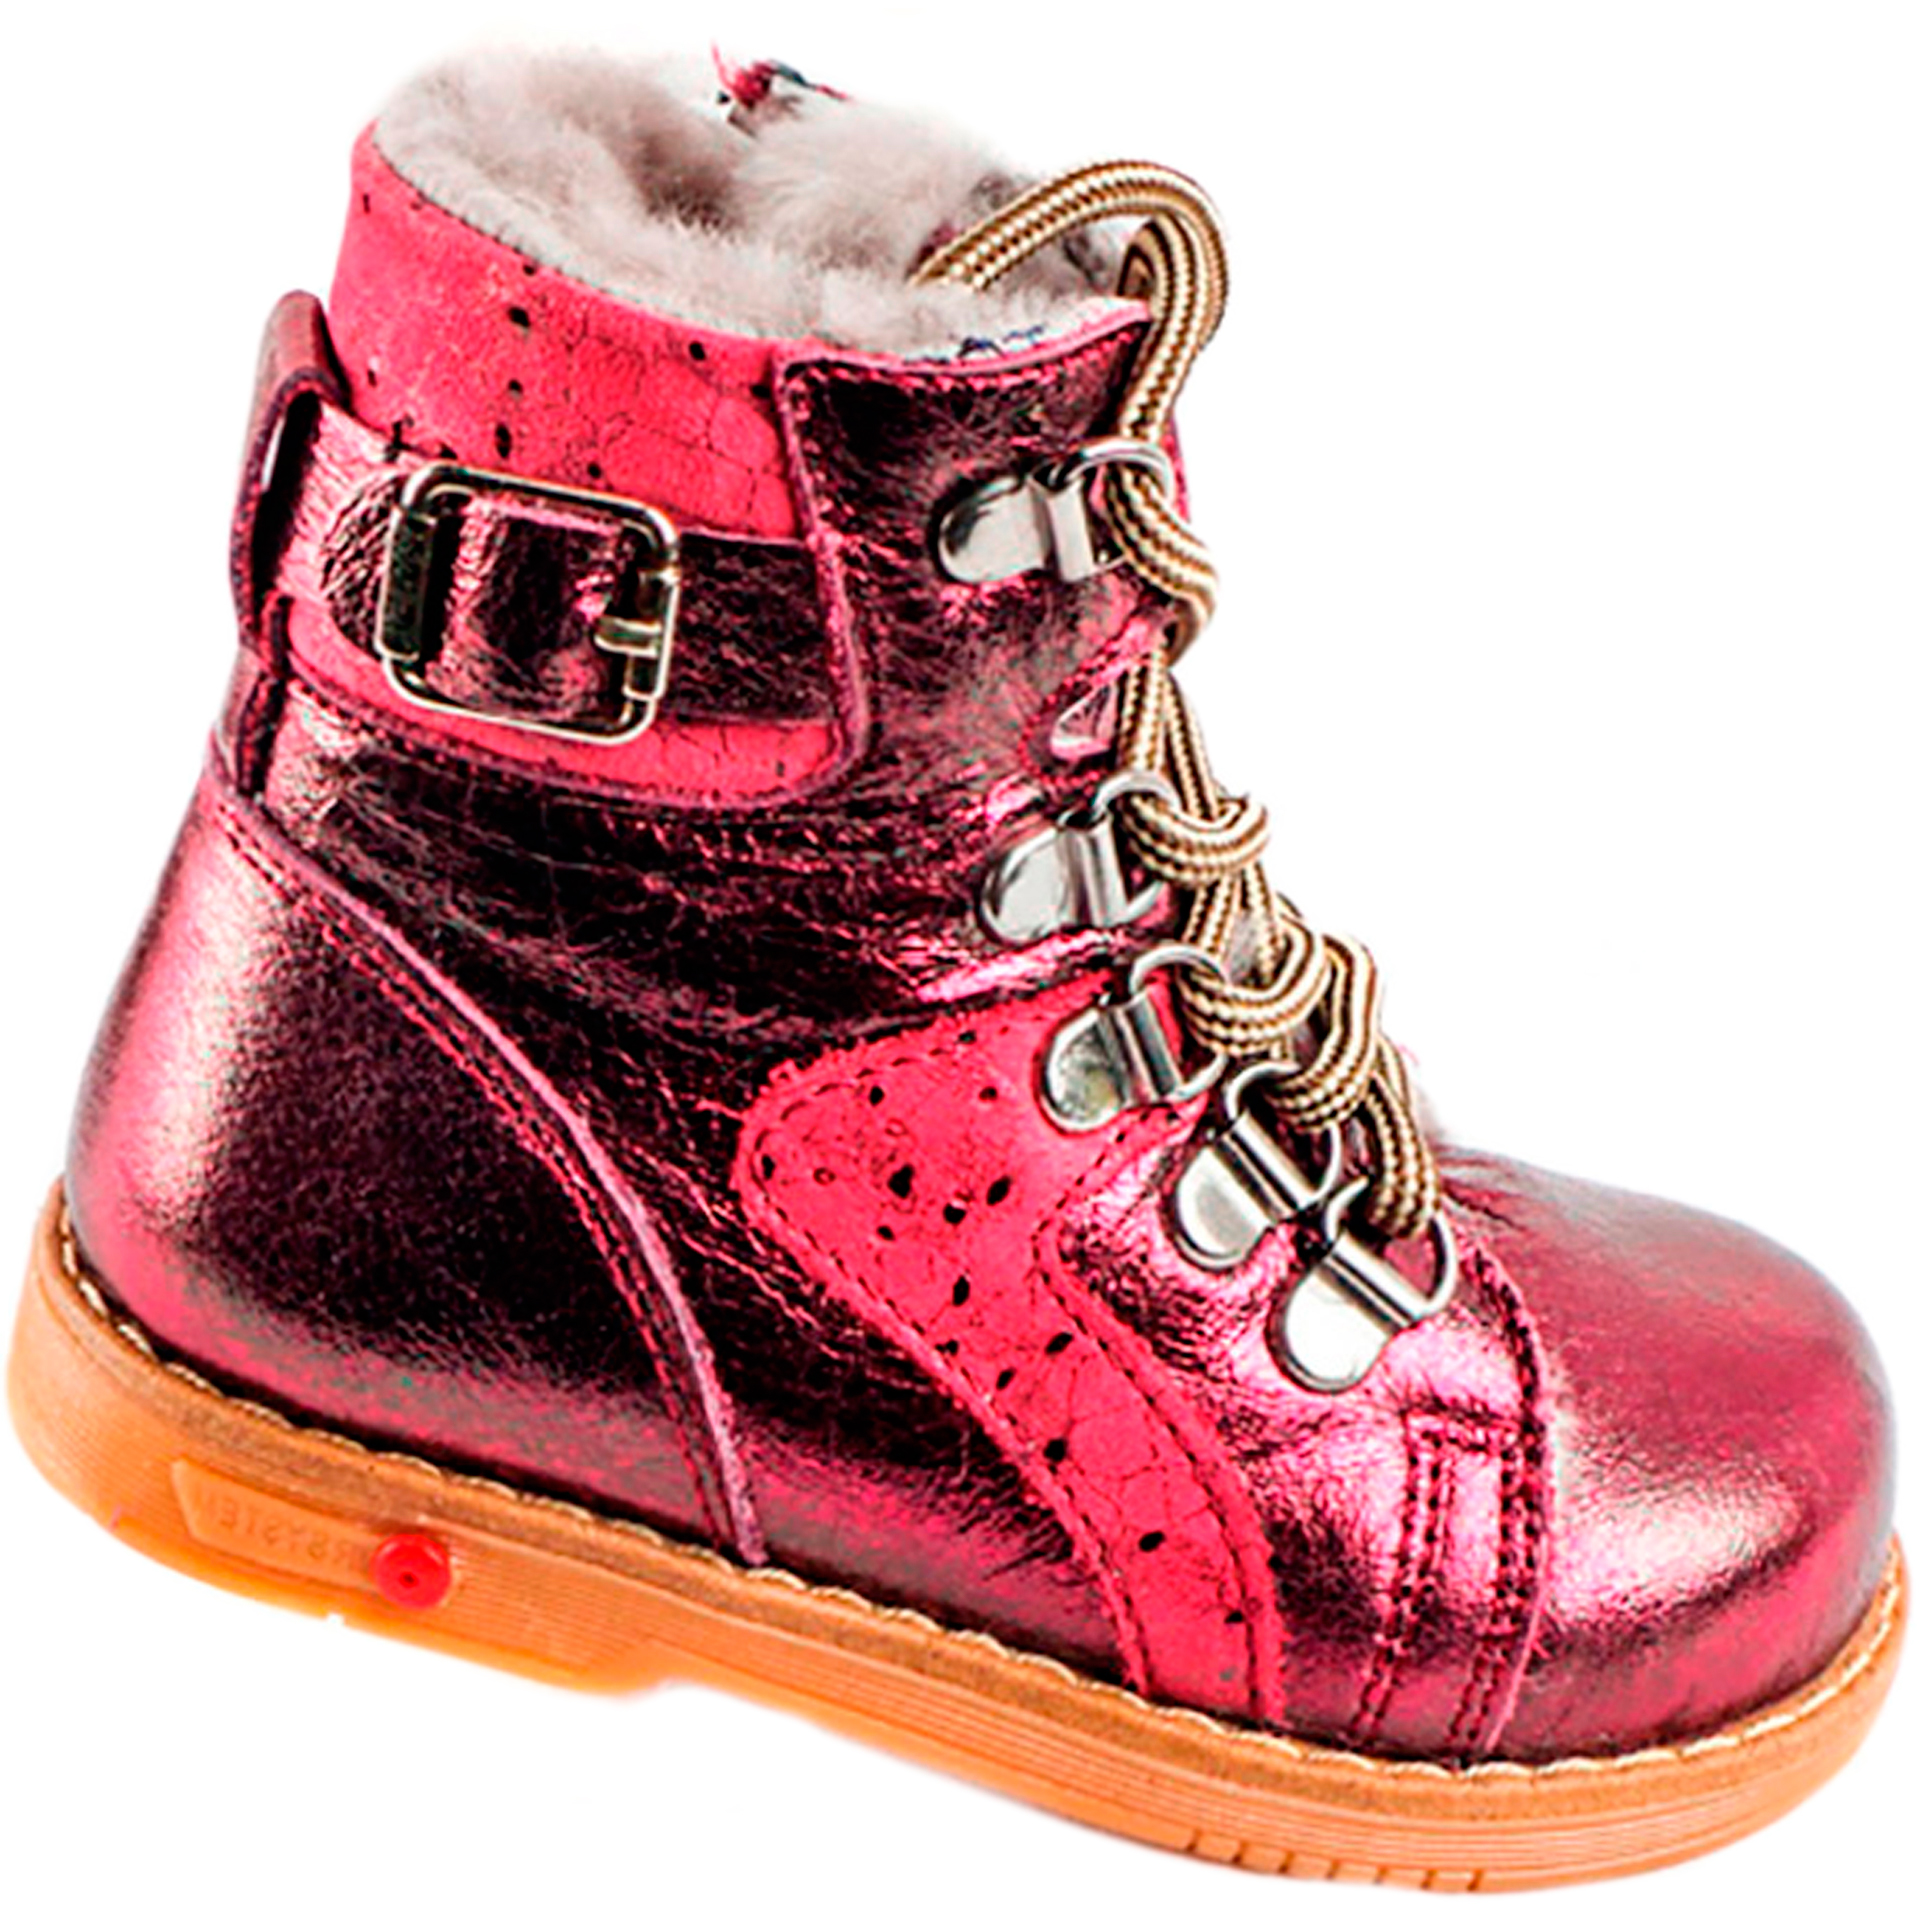 Tutubi Зимові черевики дитячі (1269) для дівчинки, матеріал Натуральна шкіра, Червоний колір, 21-29 розміри – Sole Kids. Фото 1